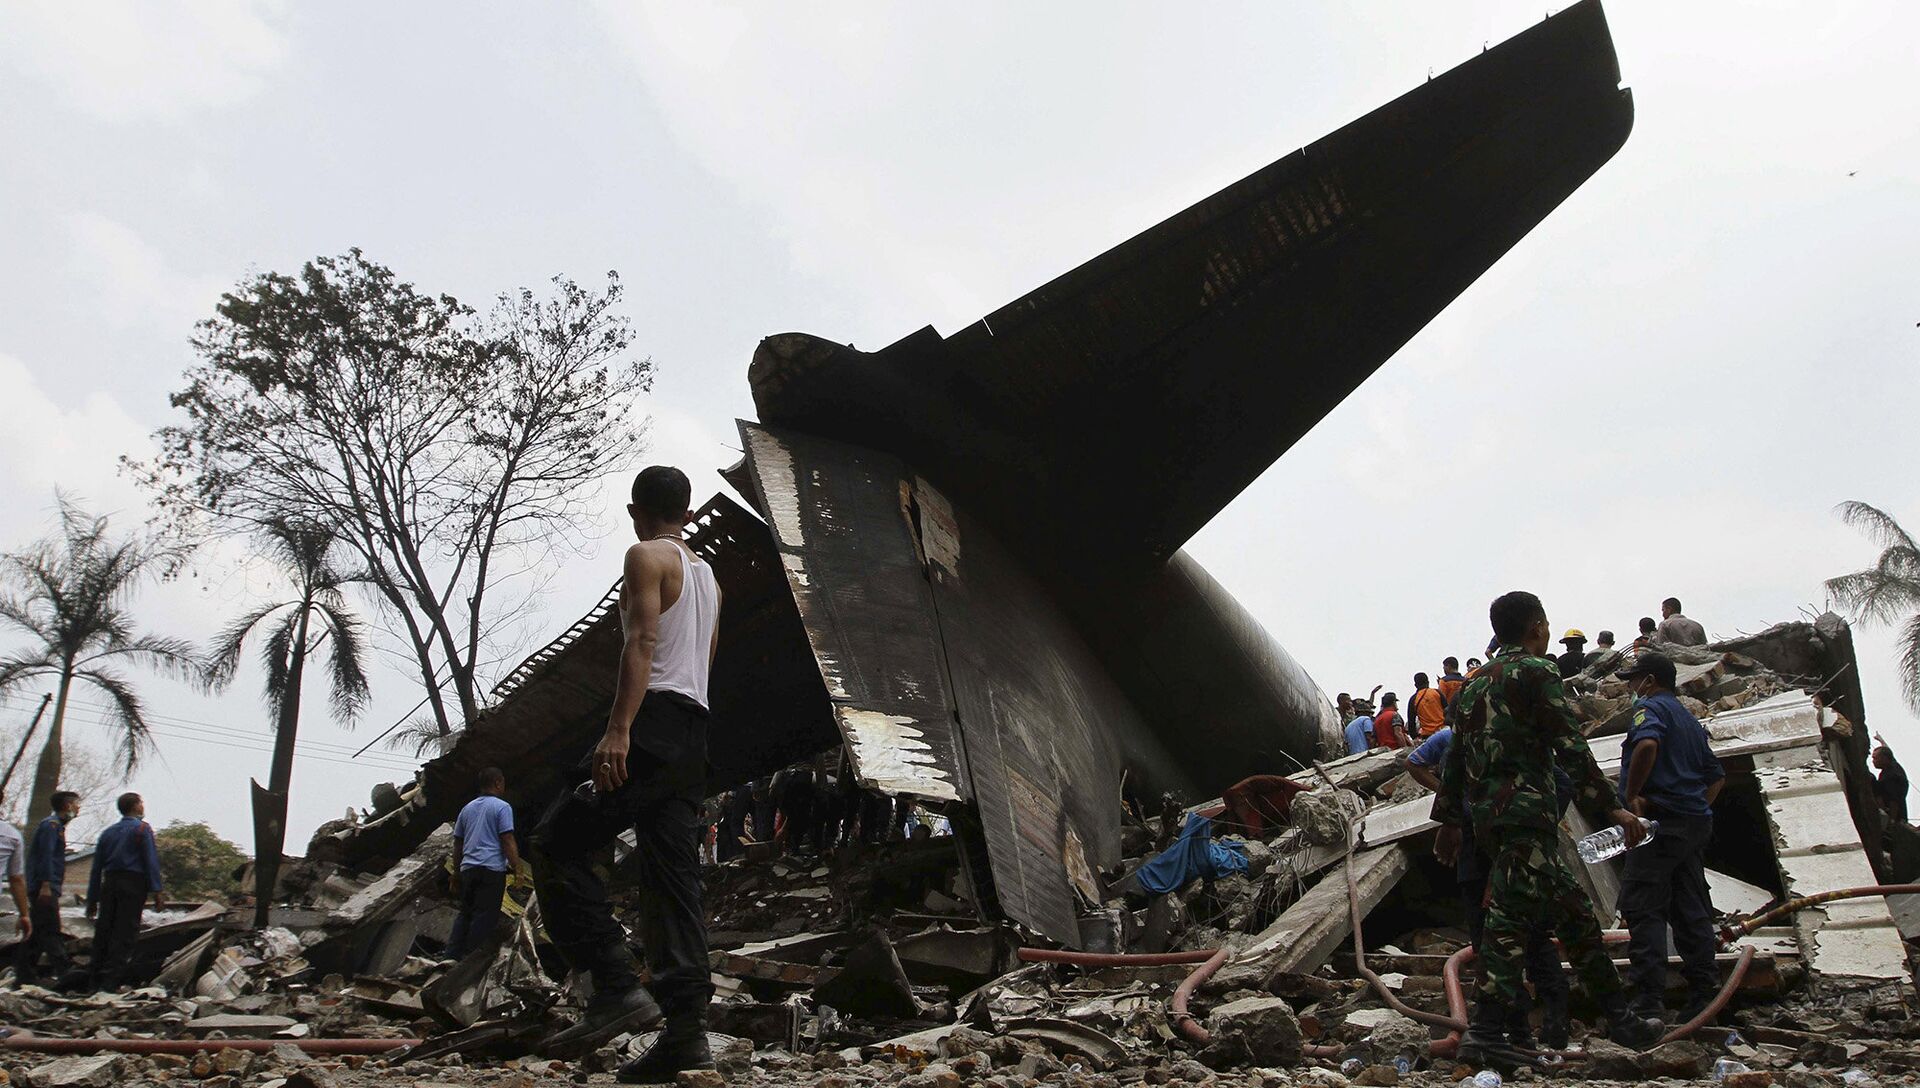 Страна разбитых. Катастрофа c-130 в Медане. Авиакатастрофа с-130 в Индонезии.